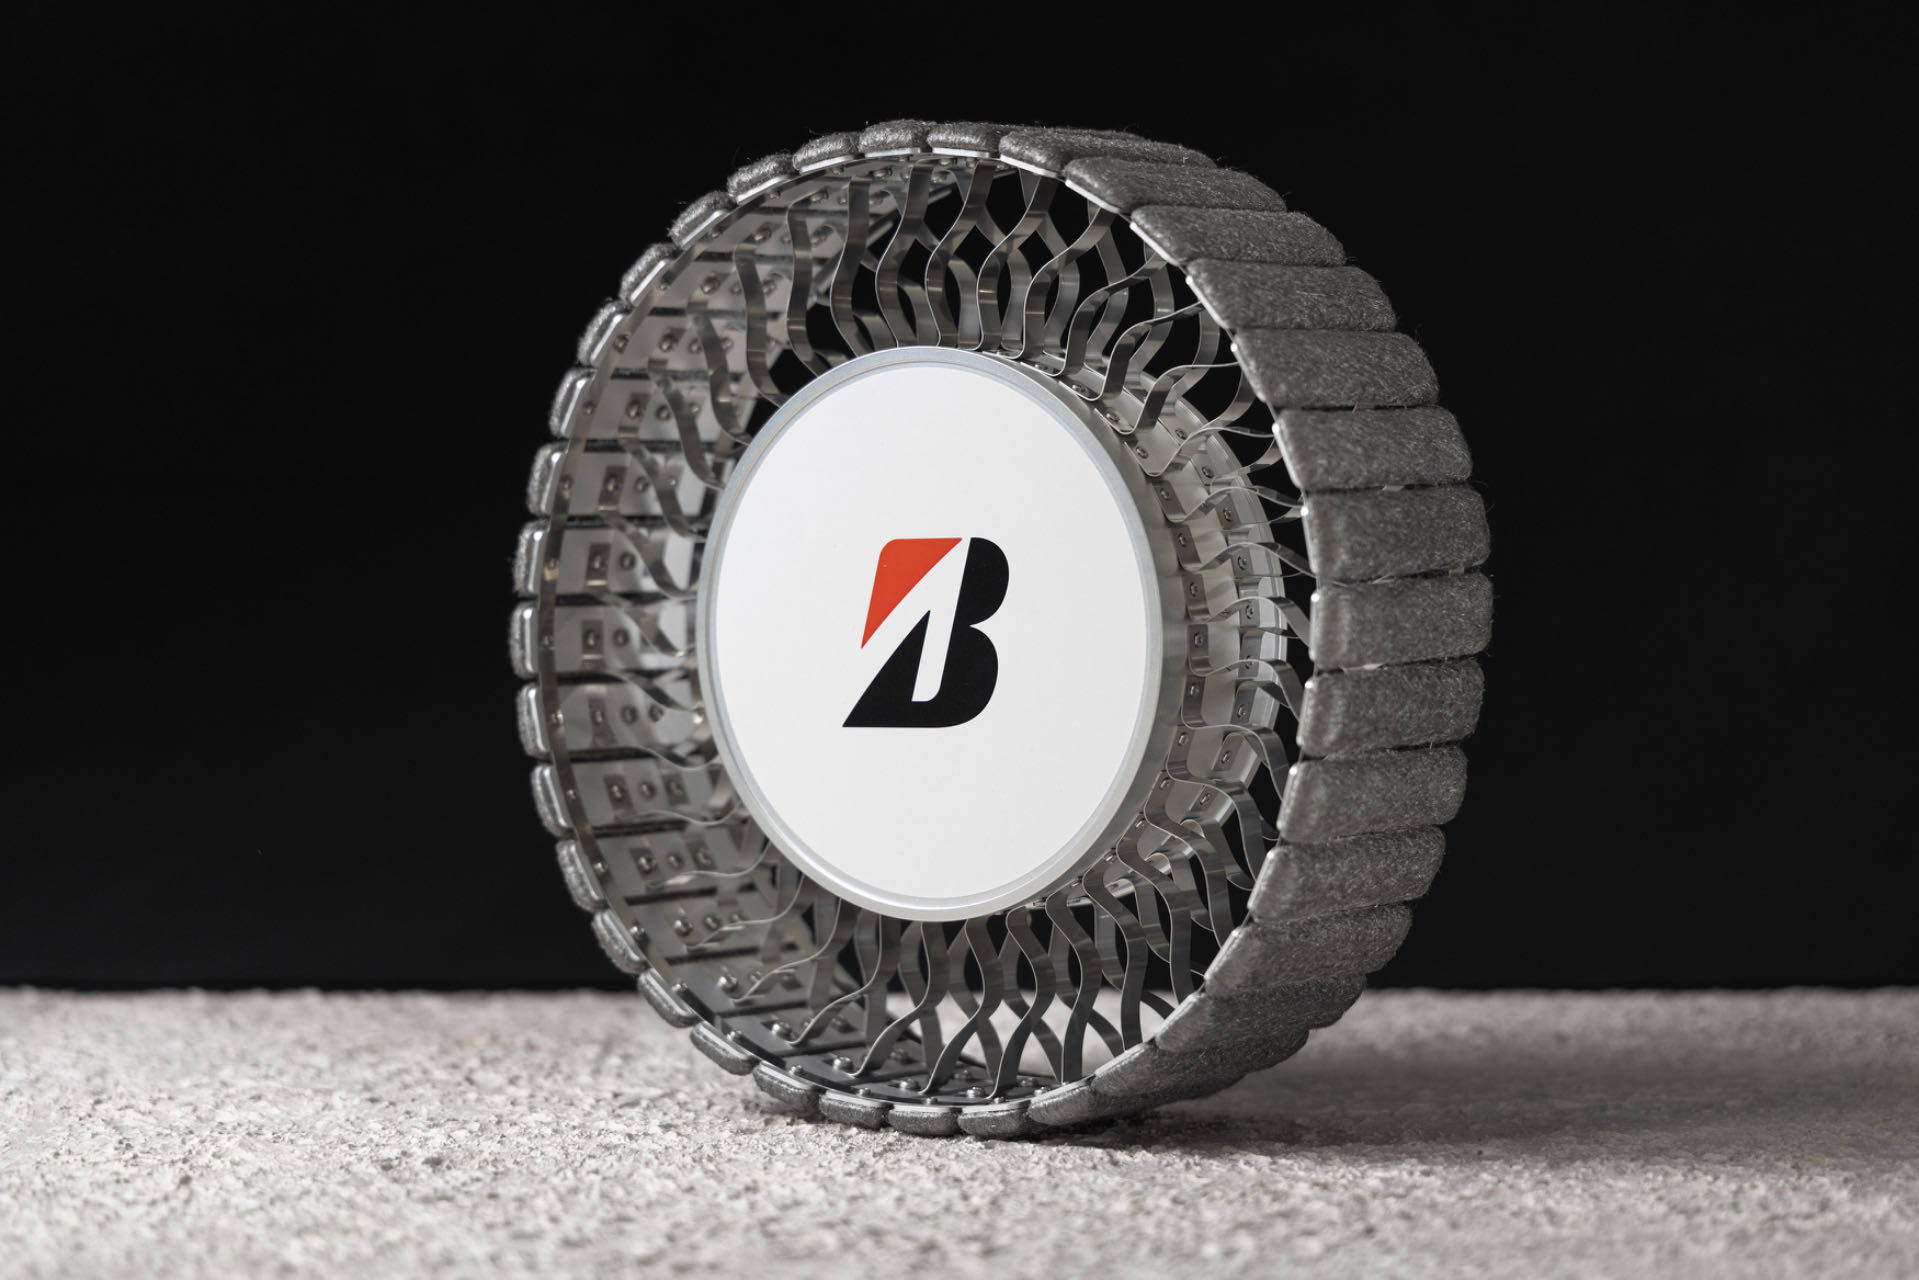 普利司通开发全新月球车轮胎， 全新概念设计模型亮相第39届航天研讨会